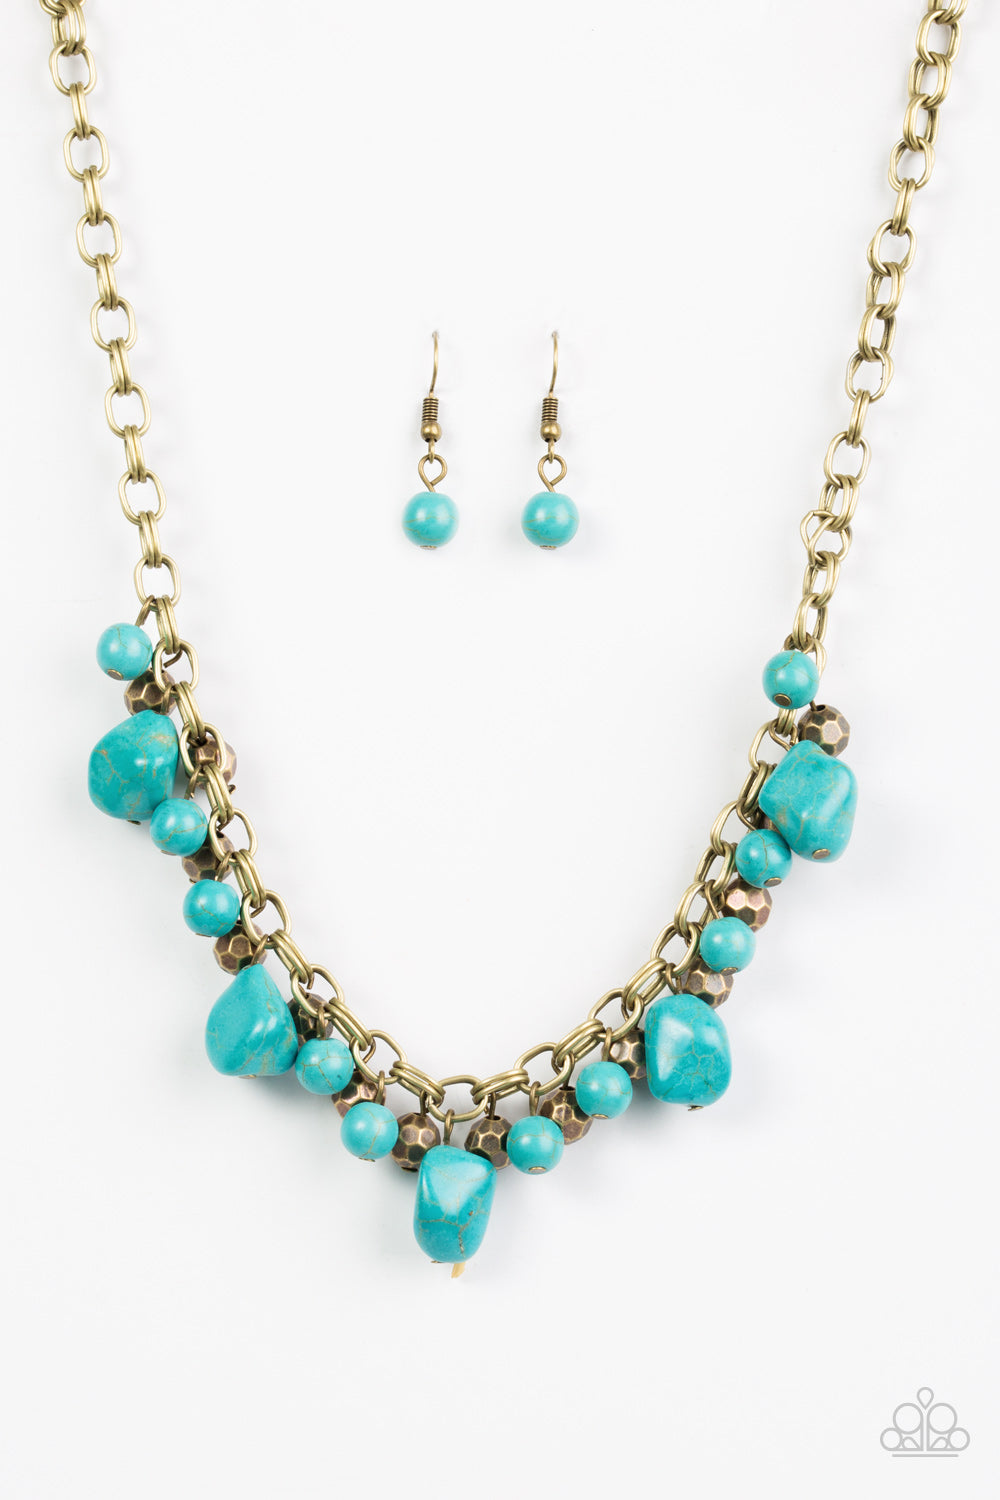 Paleo Princess - Blue/Brass necklace w/ matching bracelet